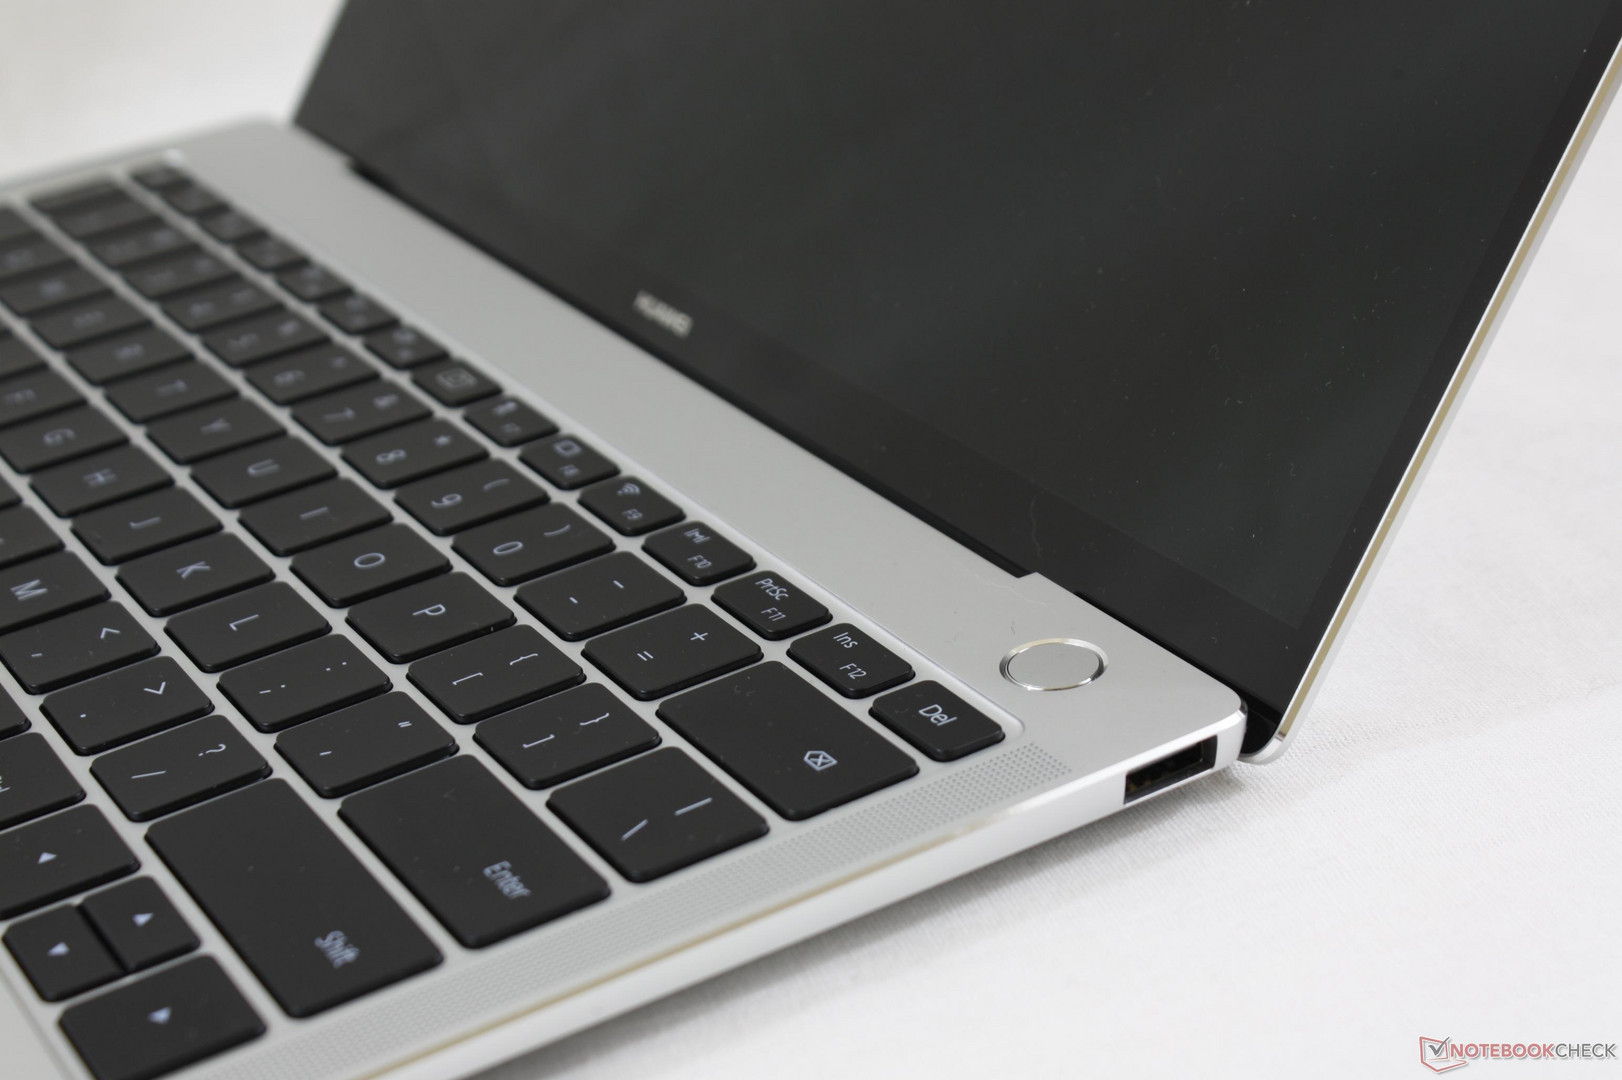 Huawei MateBook X Pro (i7-8550U, MX150) Laptop Review - NotebookCheck